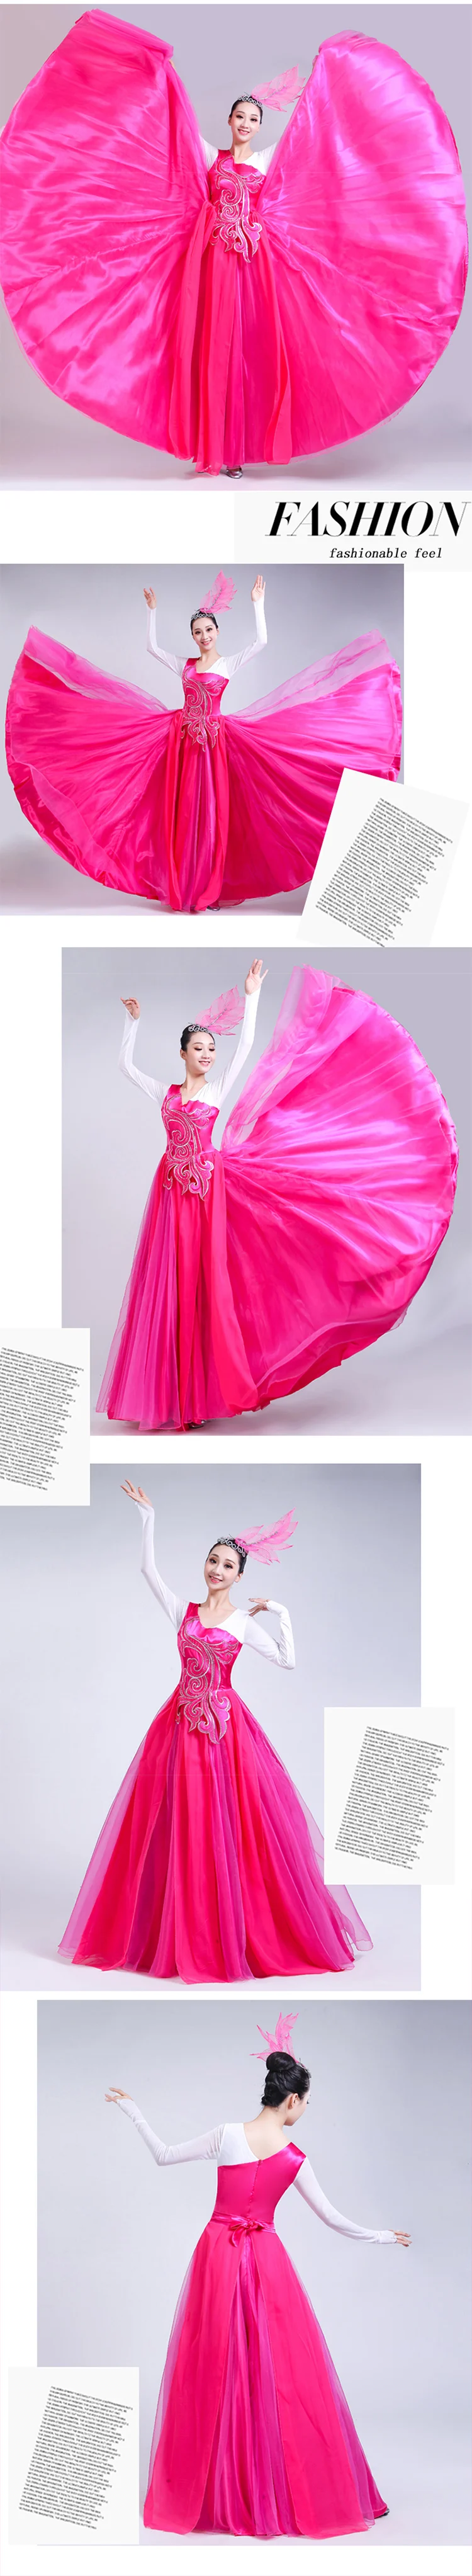 Фламенко платье женское розовое красное с длинным рукавом Дамы танец испанский костюм Испанская танцовщица бальные танцы представление одежда DN3580